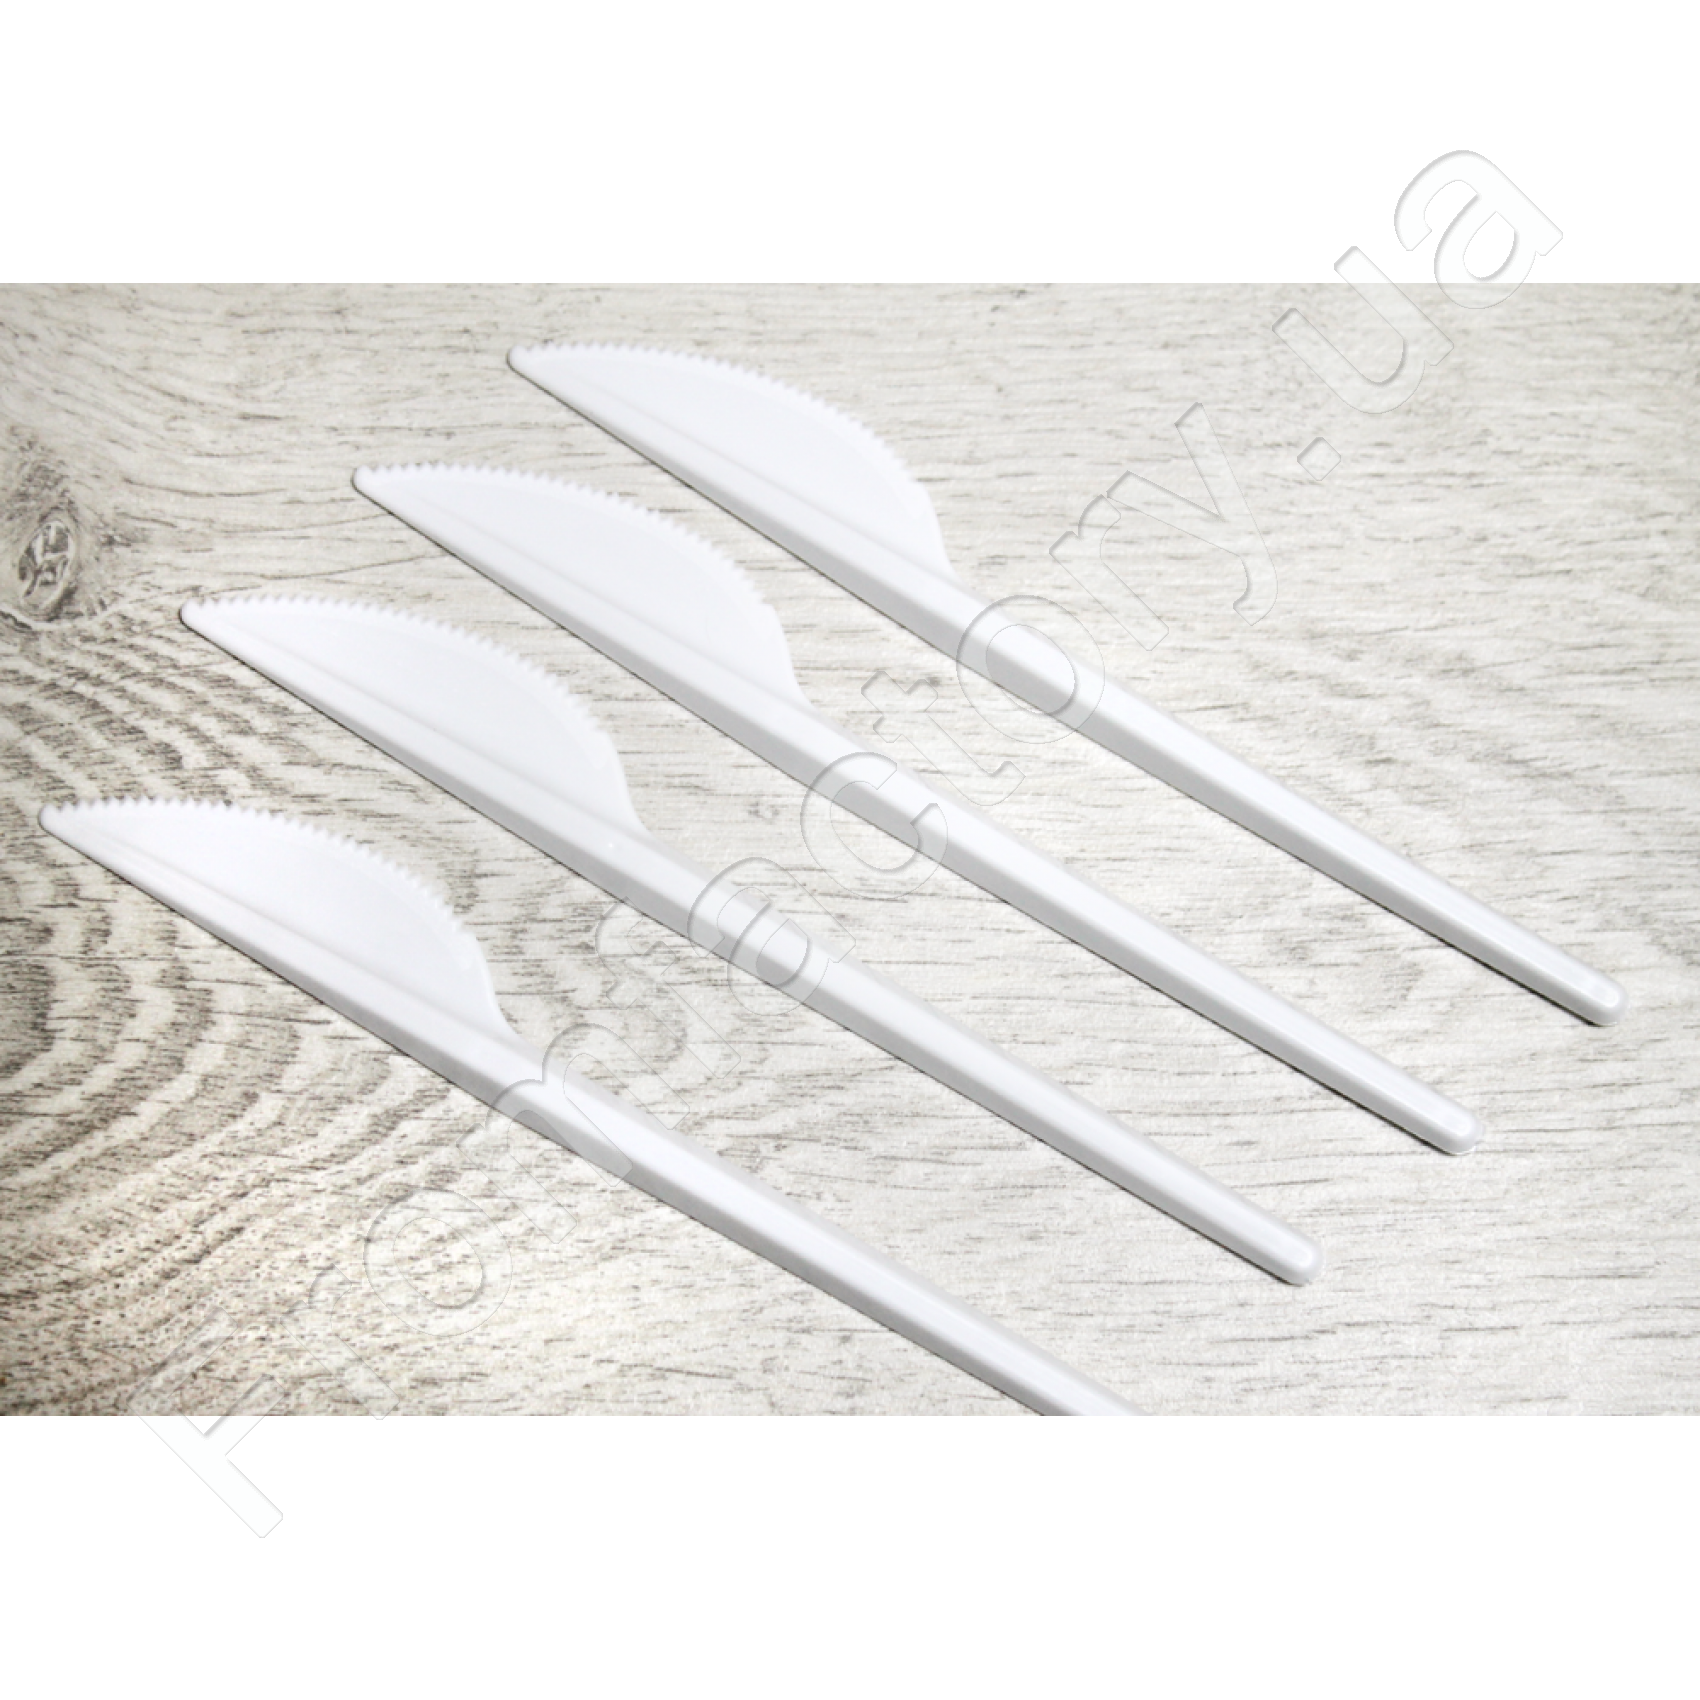 Нож пластиковый одноразовый (набор 10шт.) 16.5см